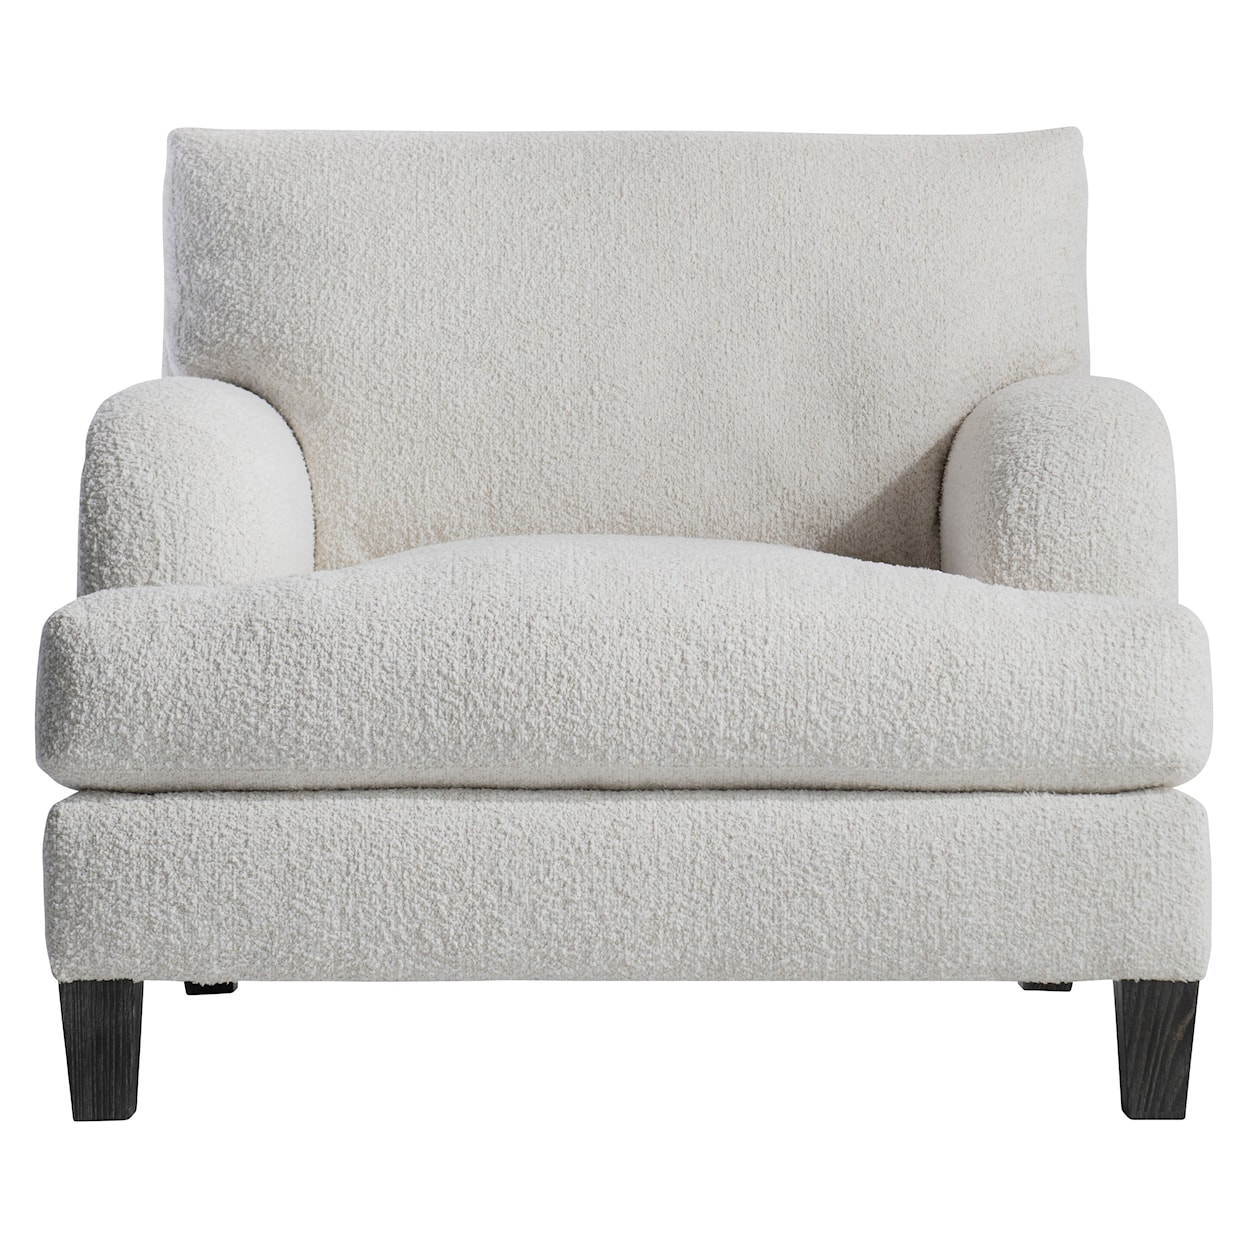 Bernhardt Bernhardt Living Ariel Fabric Chair Without Pillows